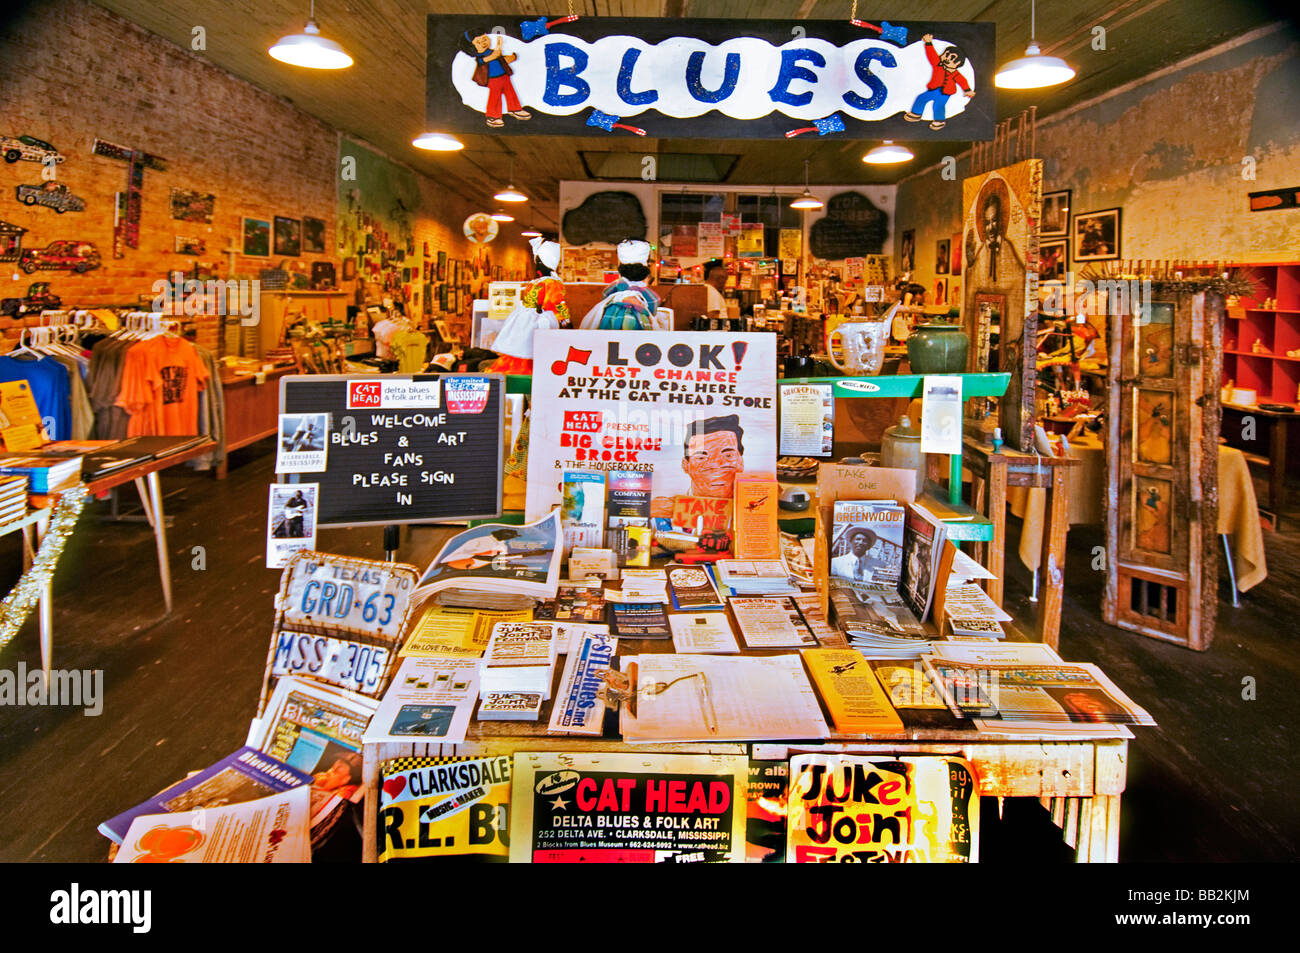 Intérieur de la Cat Head Delta Blues et Folk Art record store à Clarksdale, Mississippi Banque D'Images